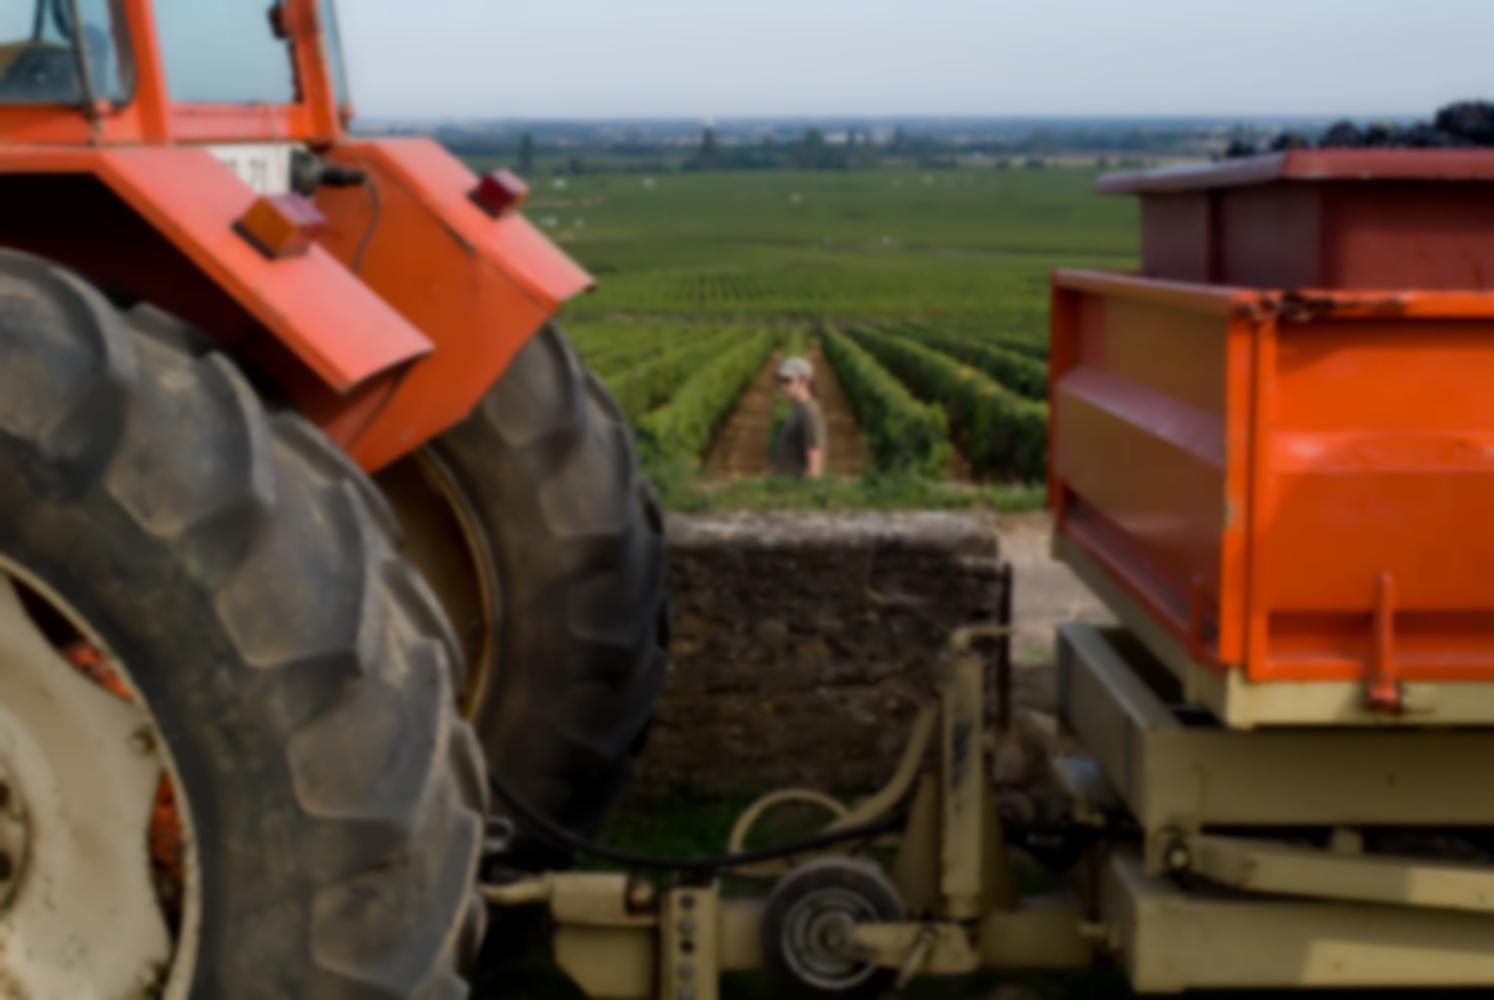 Entre le tracteur et sa benne orange, les rangs de vigne, et Mateusz. Pommard, Bourgogne, septembre 2009.